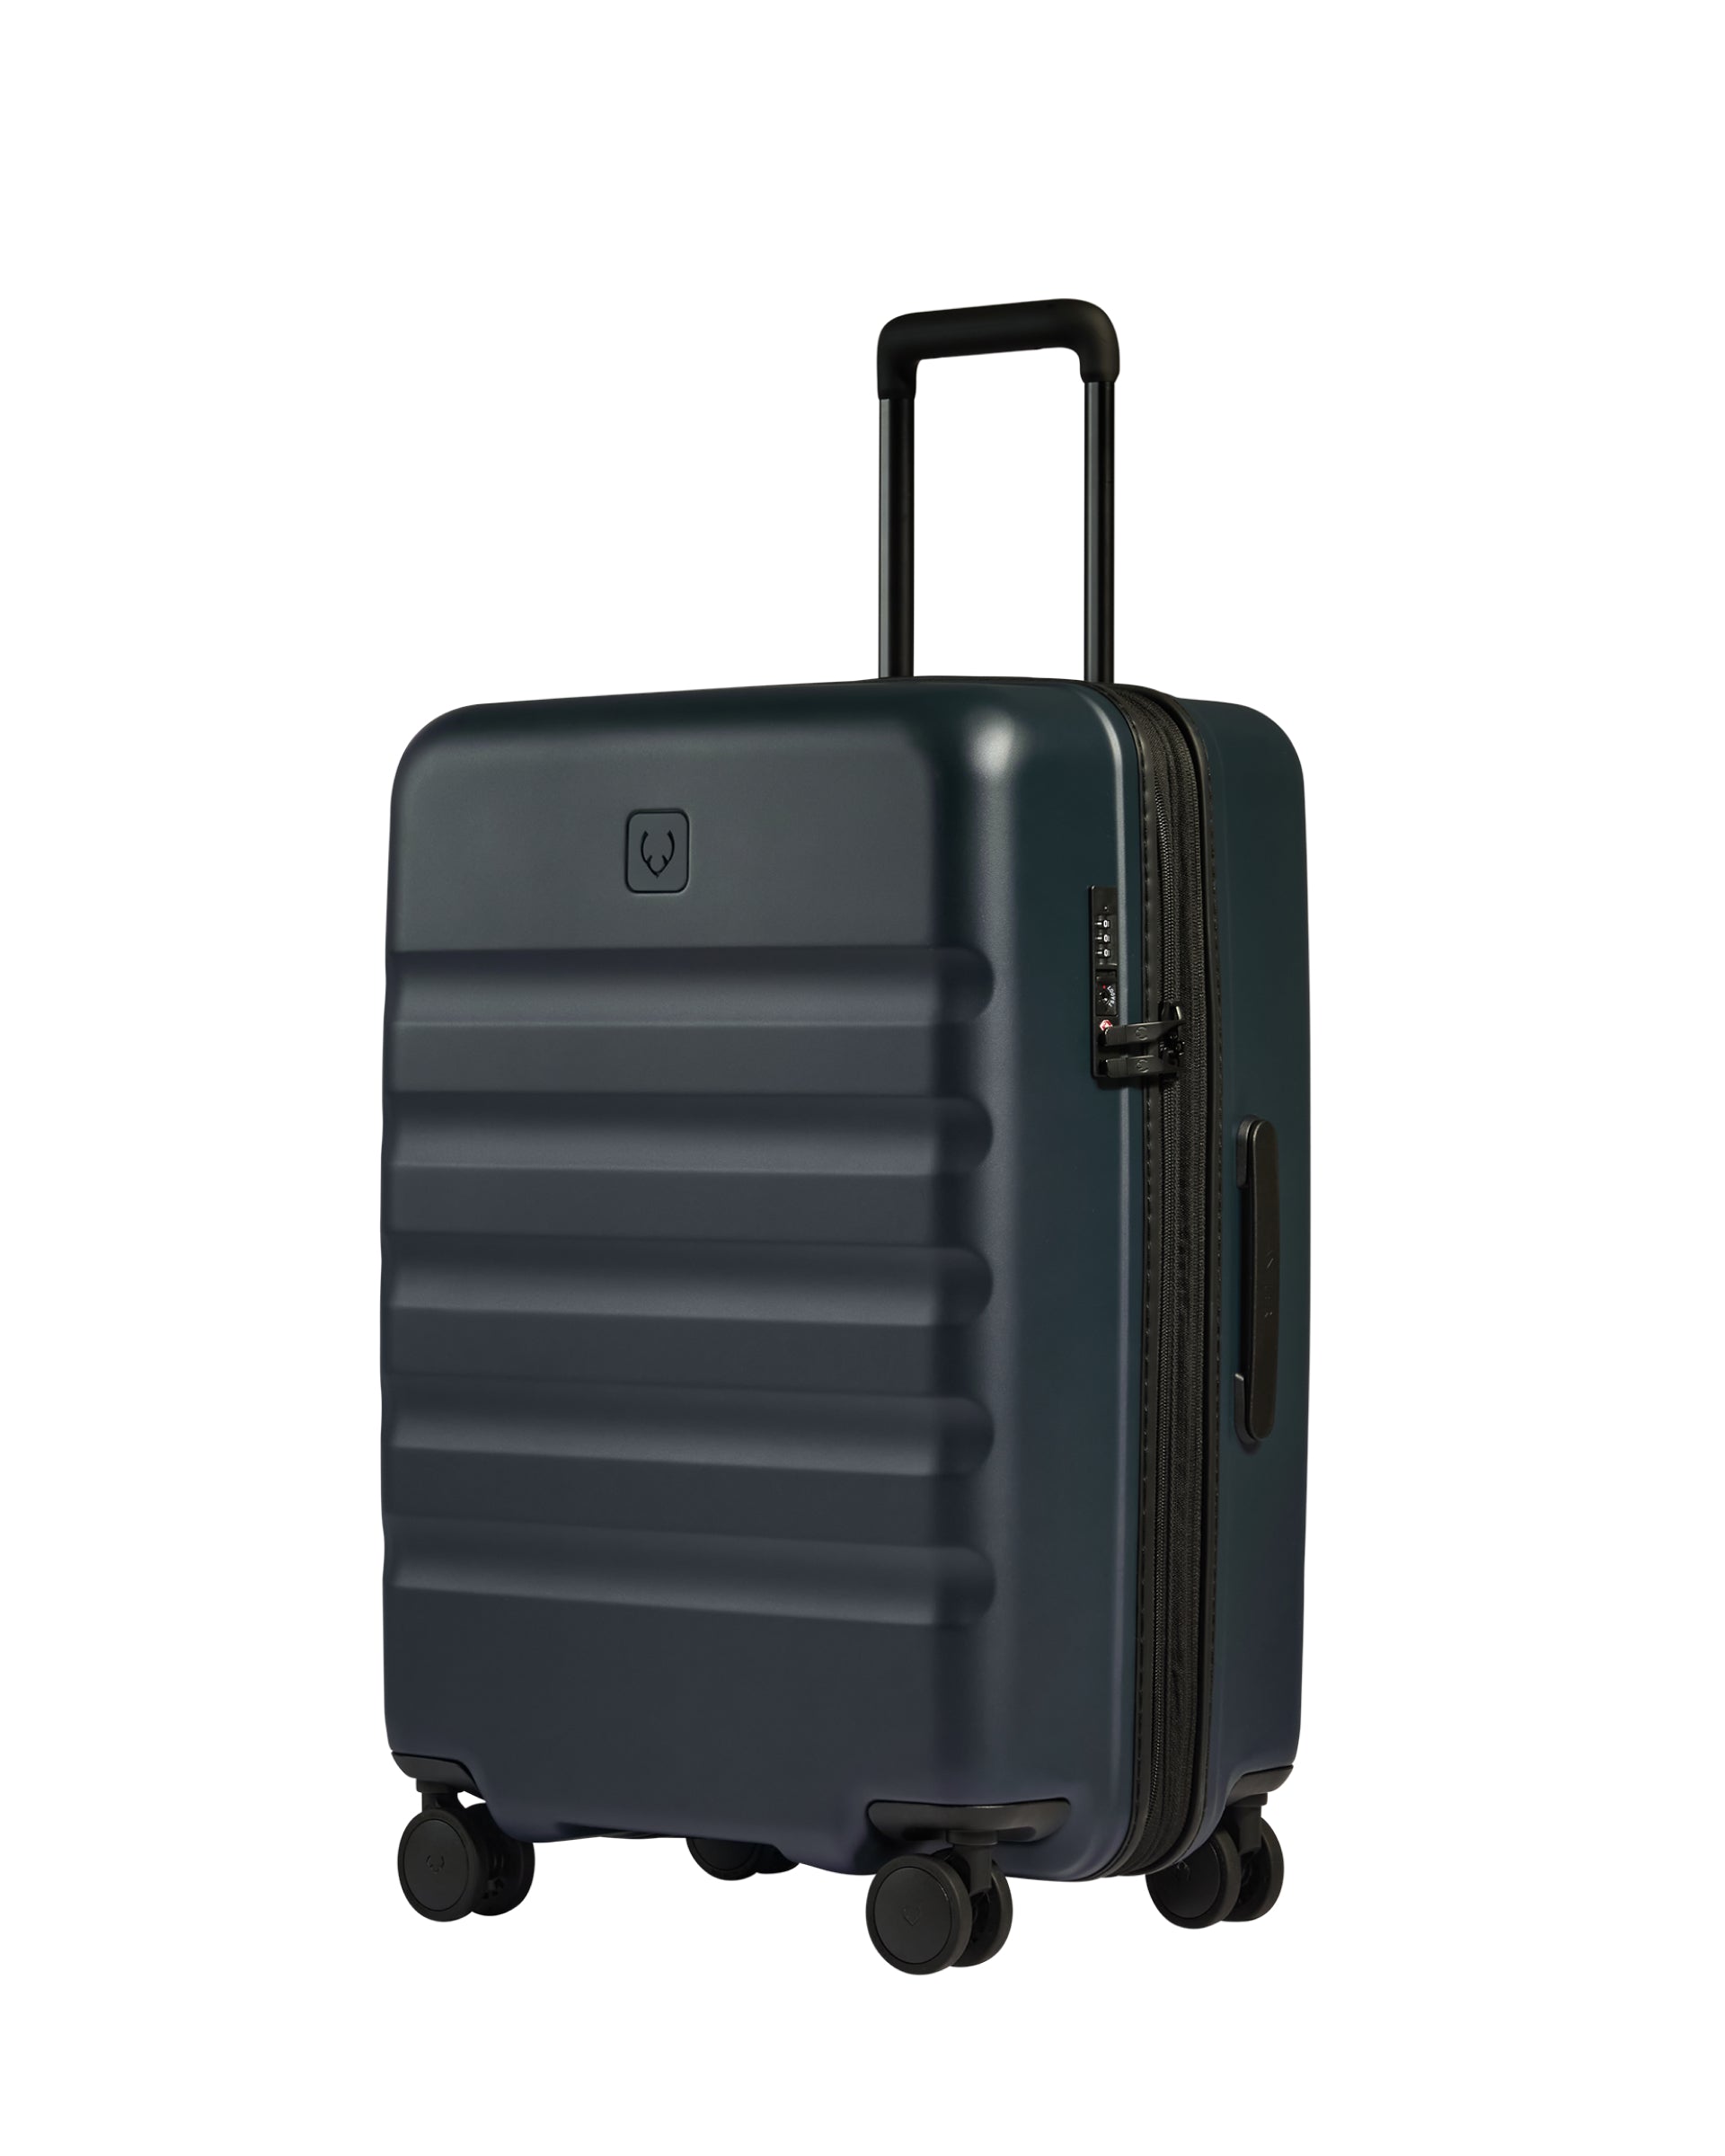 View Antler Icon Stripe Medium Suitcase In Indigo Blue Size 455cm x 66cm x 30cm information